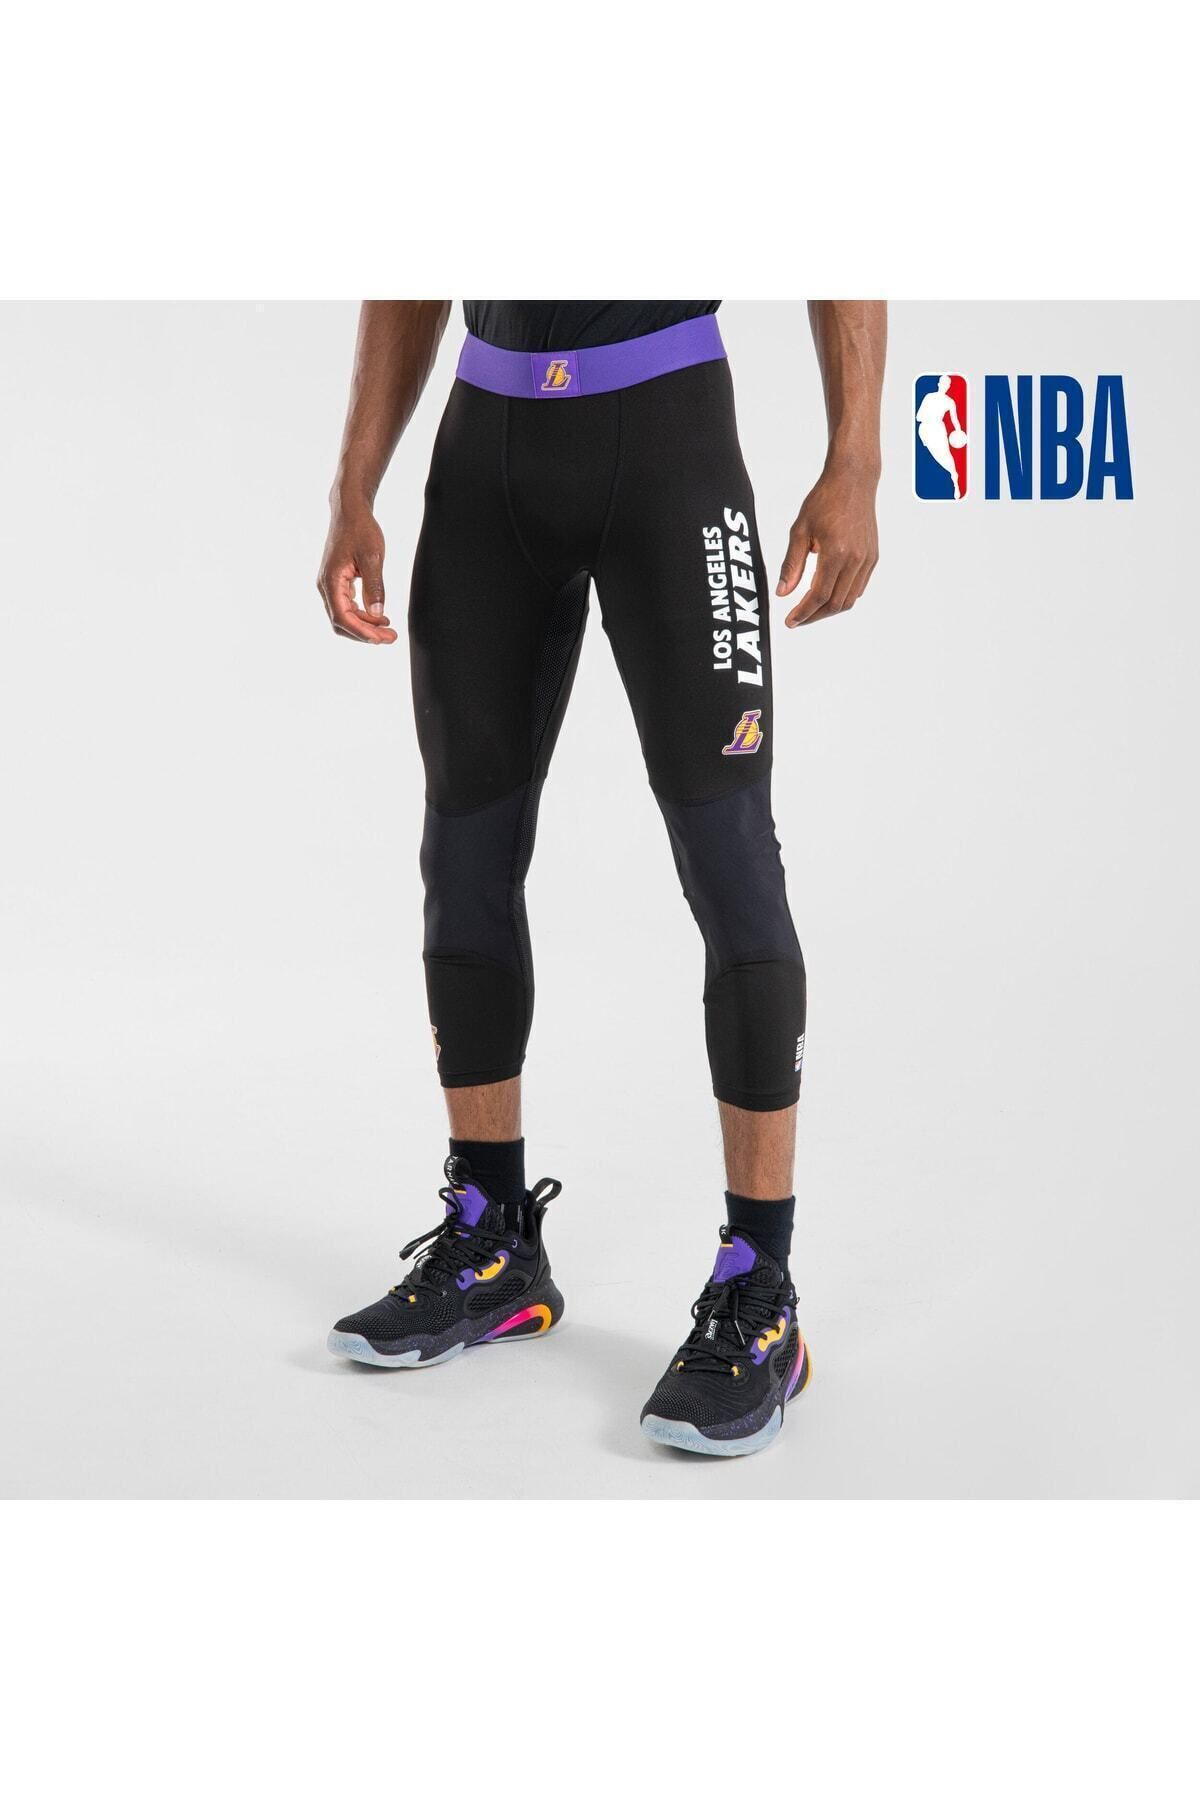 Men's/Women's Basketball 3/4 Leggings 500 - NBA Brooklyn Nets